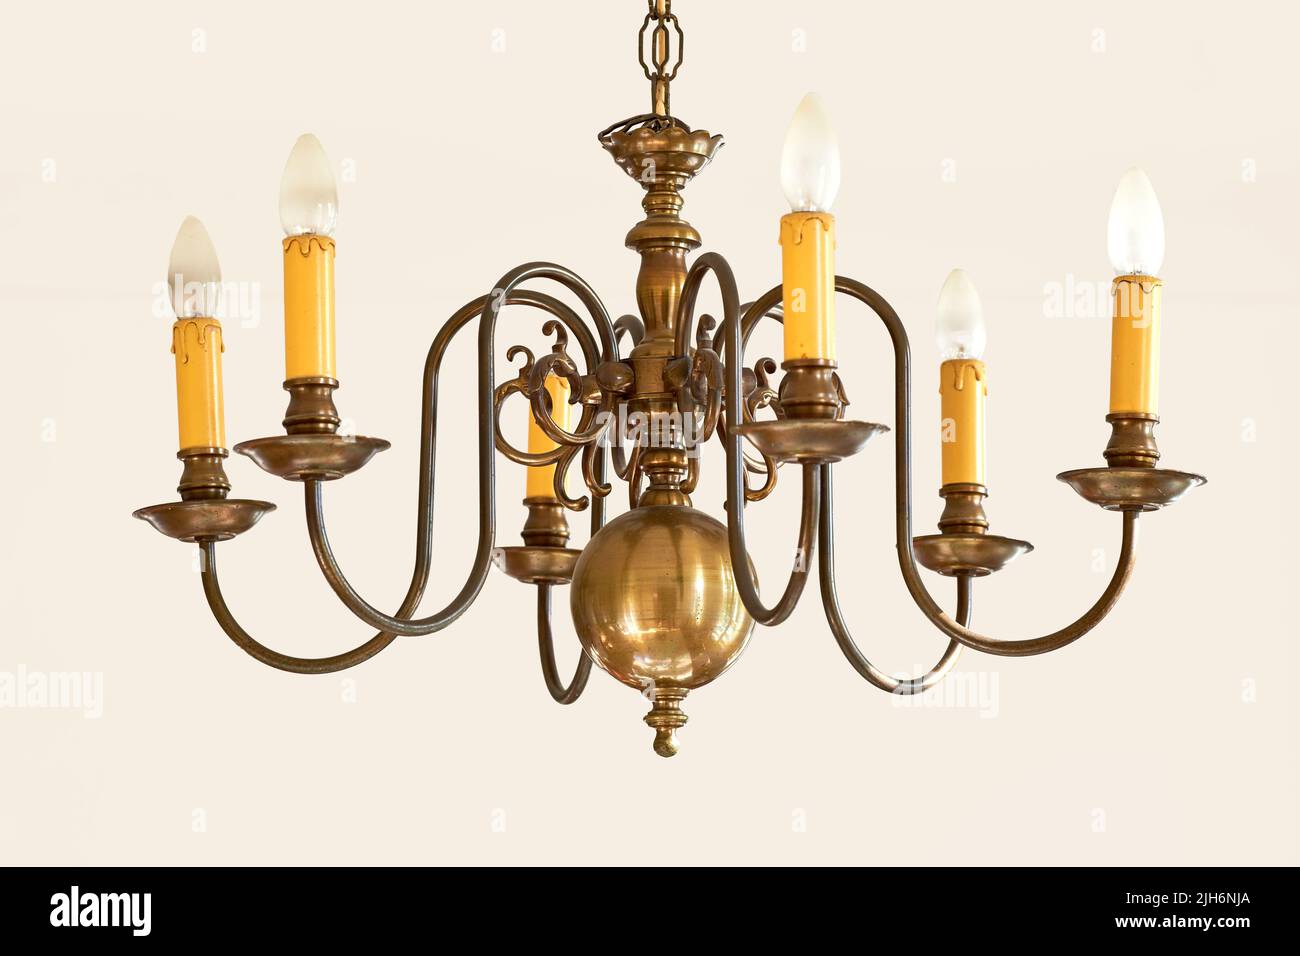 Klassische Vintage-Hängelampen für ein großes Foyer oder Esszimmer. Goldene Kerze wie ein Beleuchtungsobjekt für ein königliches viktorianisches Innenarchitektur-Design. Messing Stockfoto